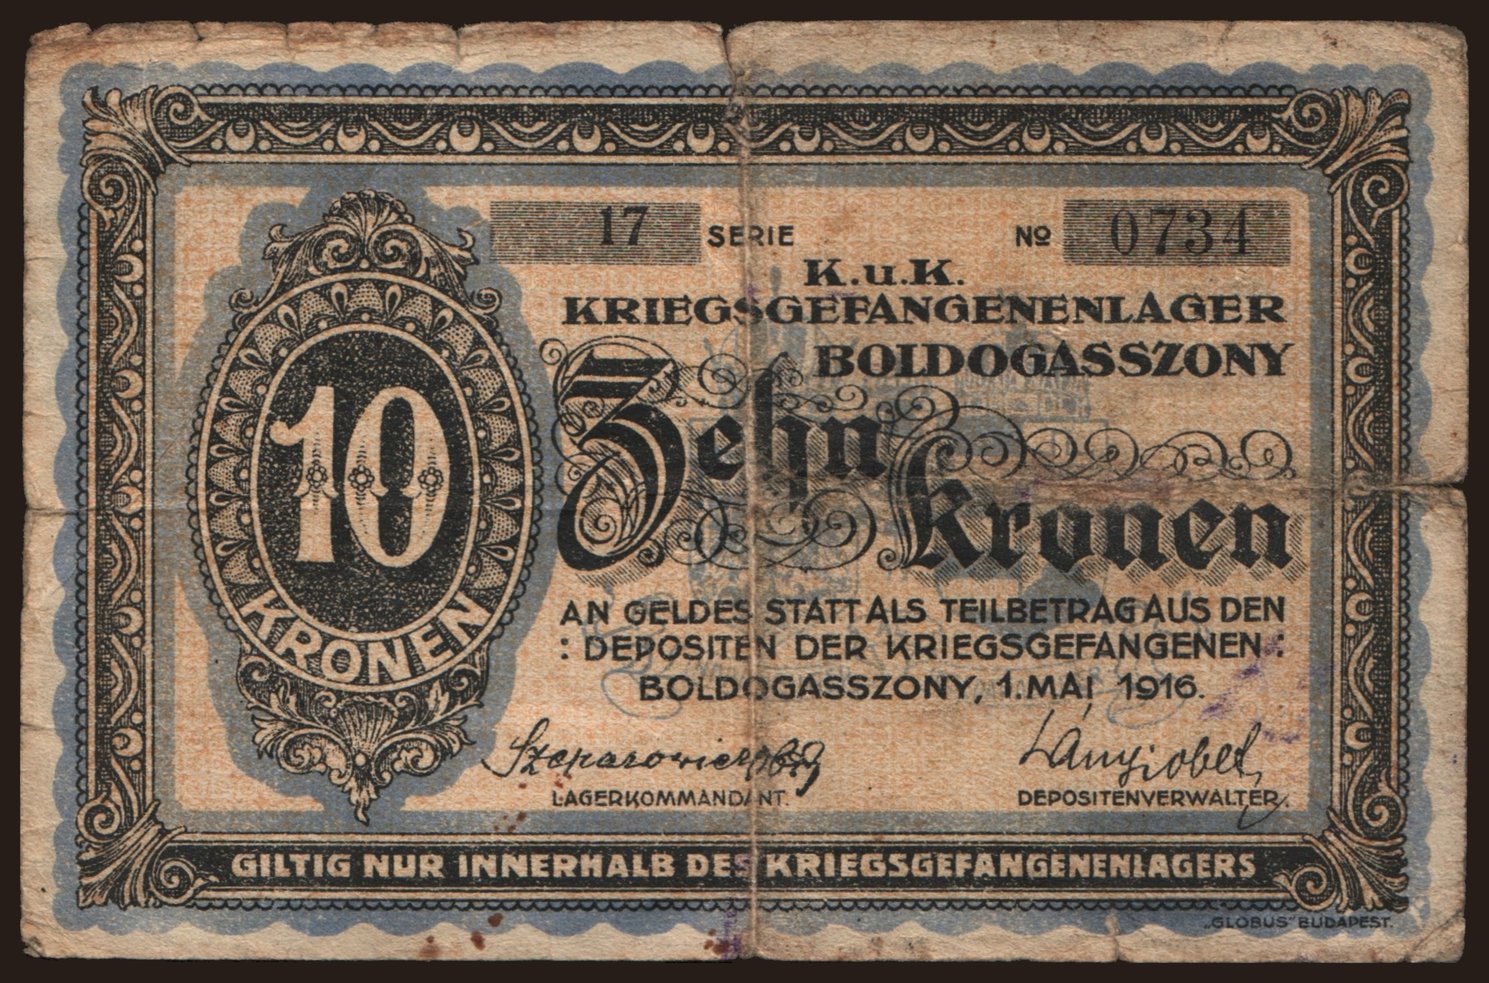 Boldogasszony, 10 Kronen, 1916